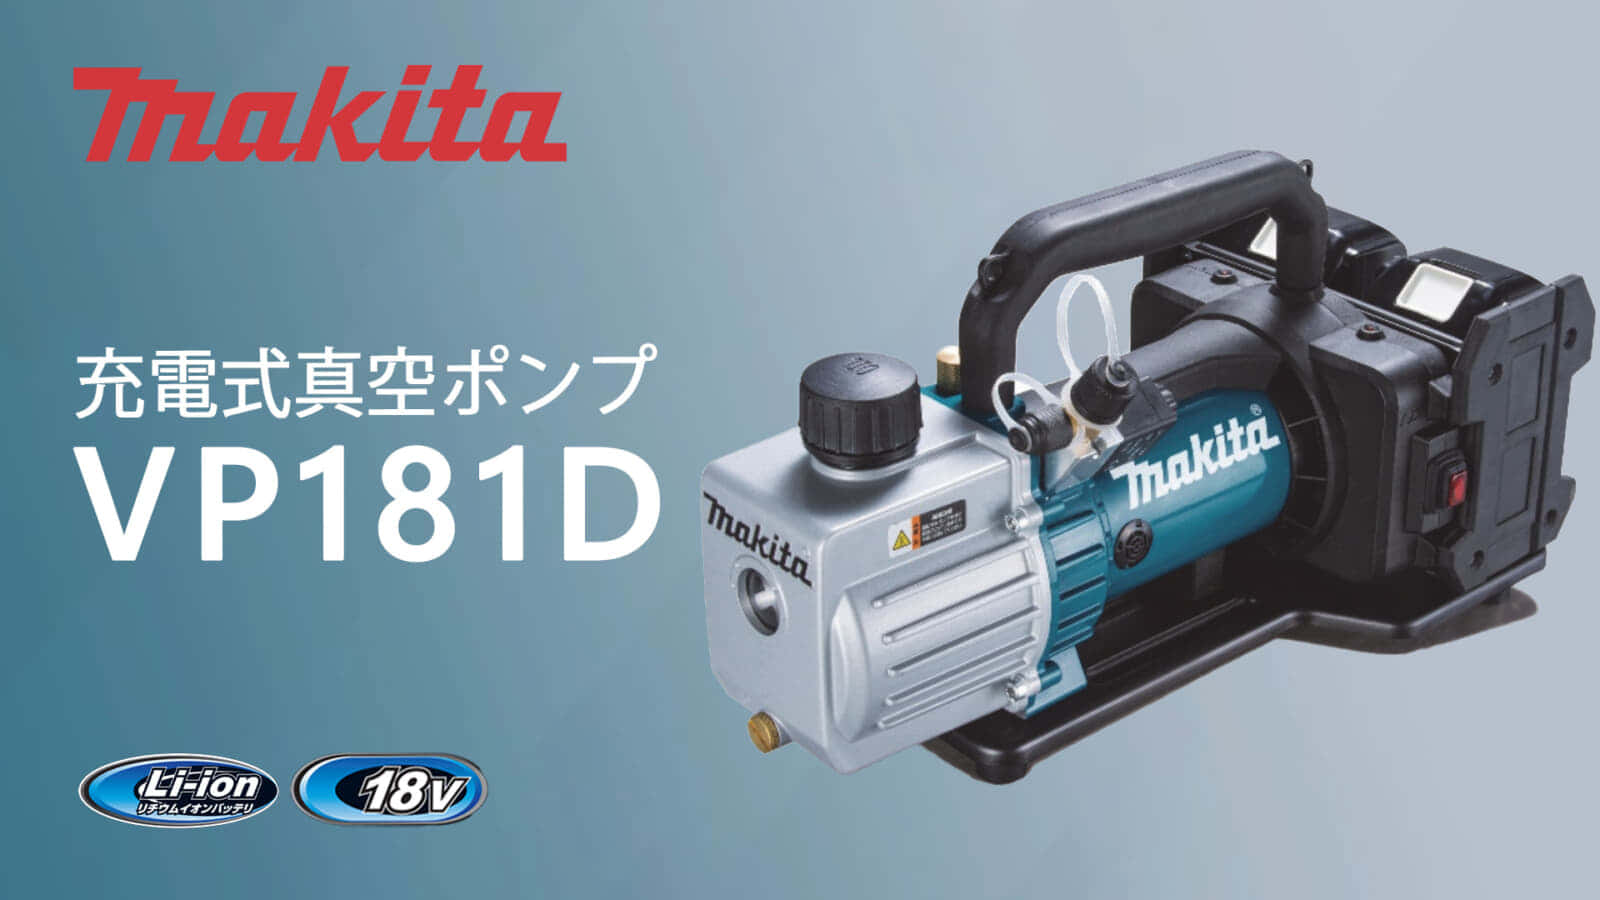 マキタ VP181D 充電式真空ポンプを発売、2ステージ方式を搭載